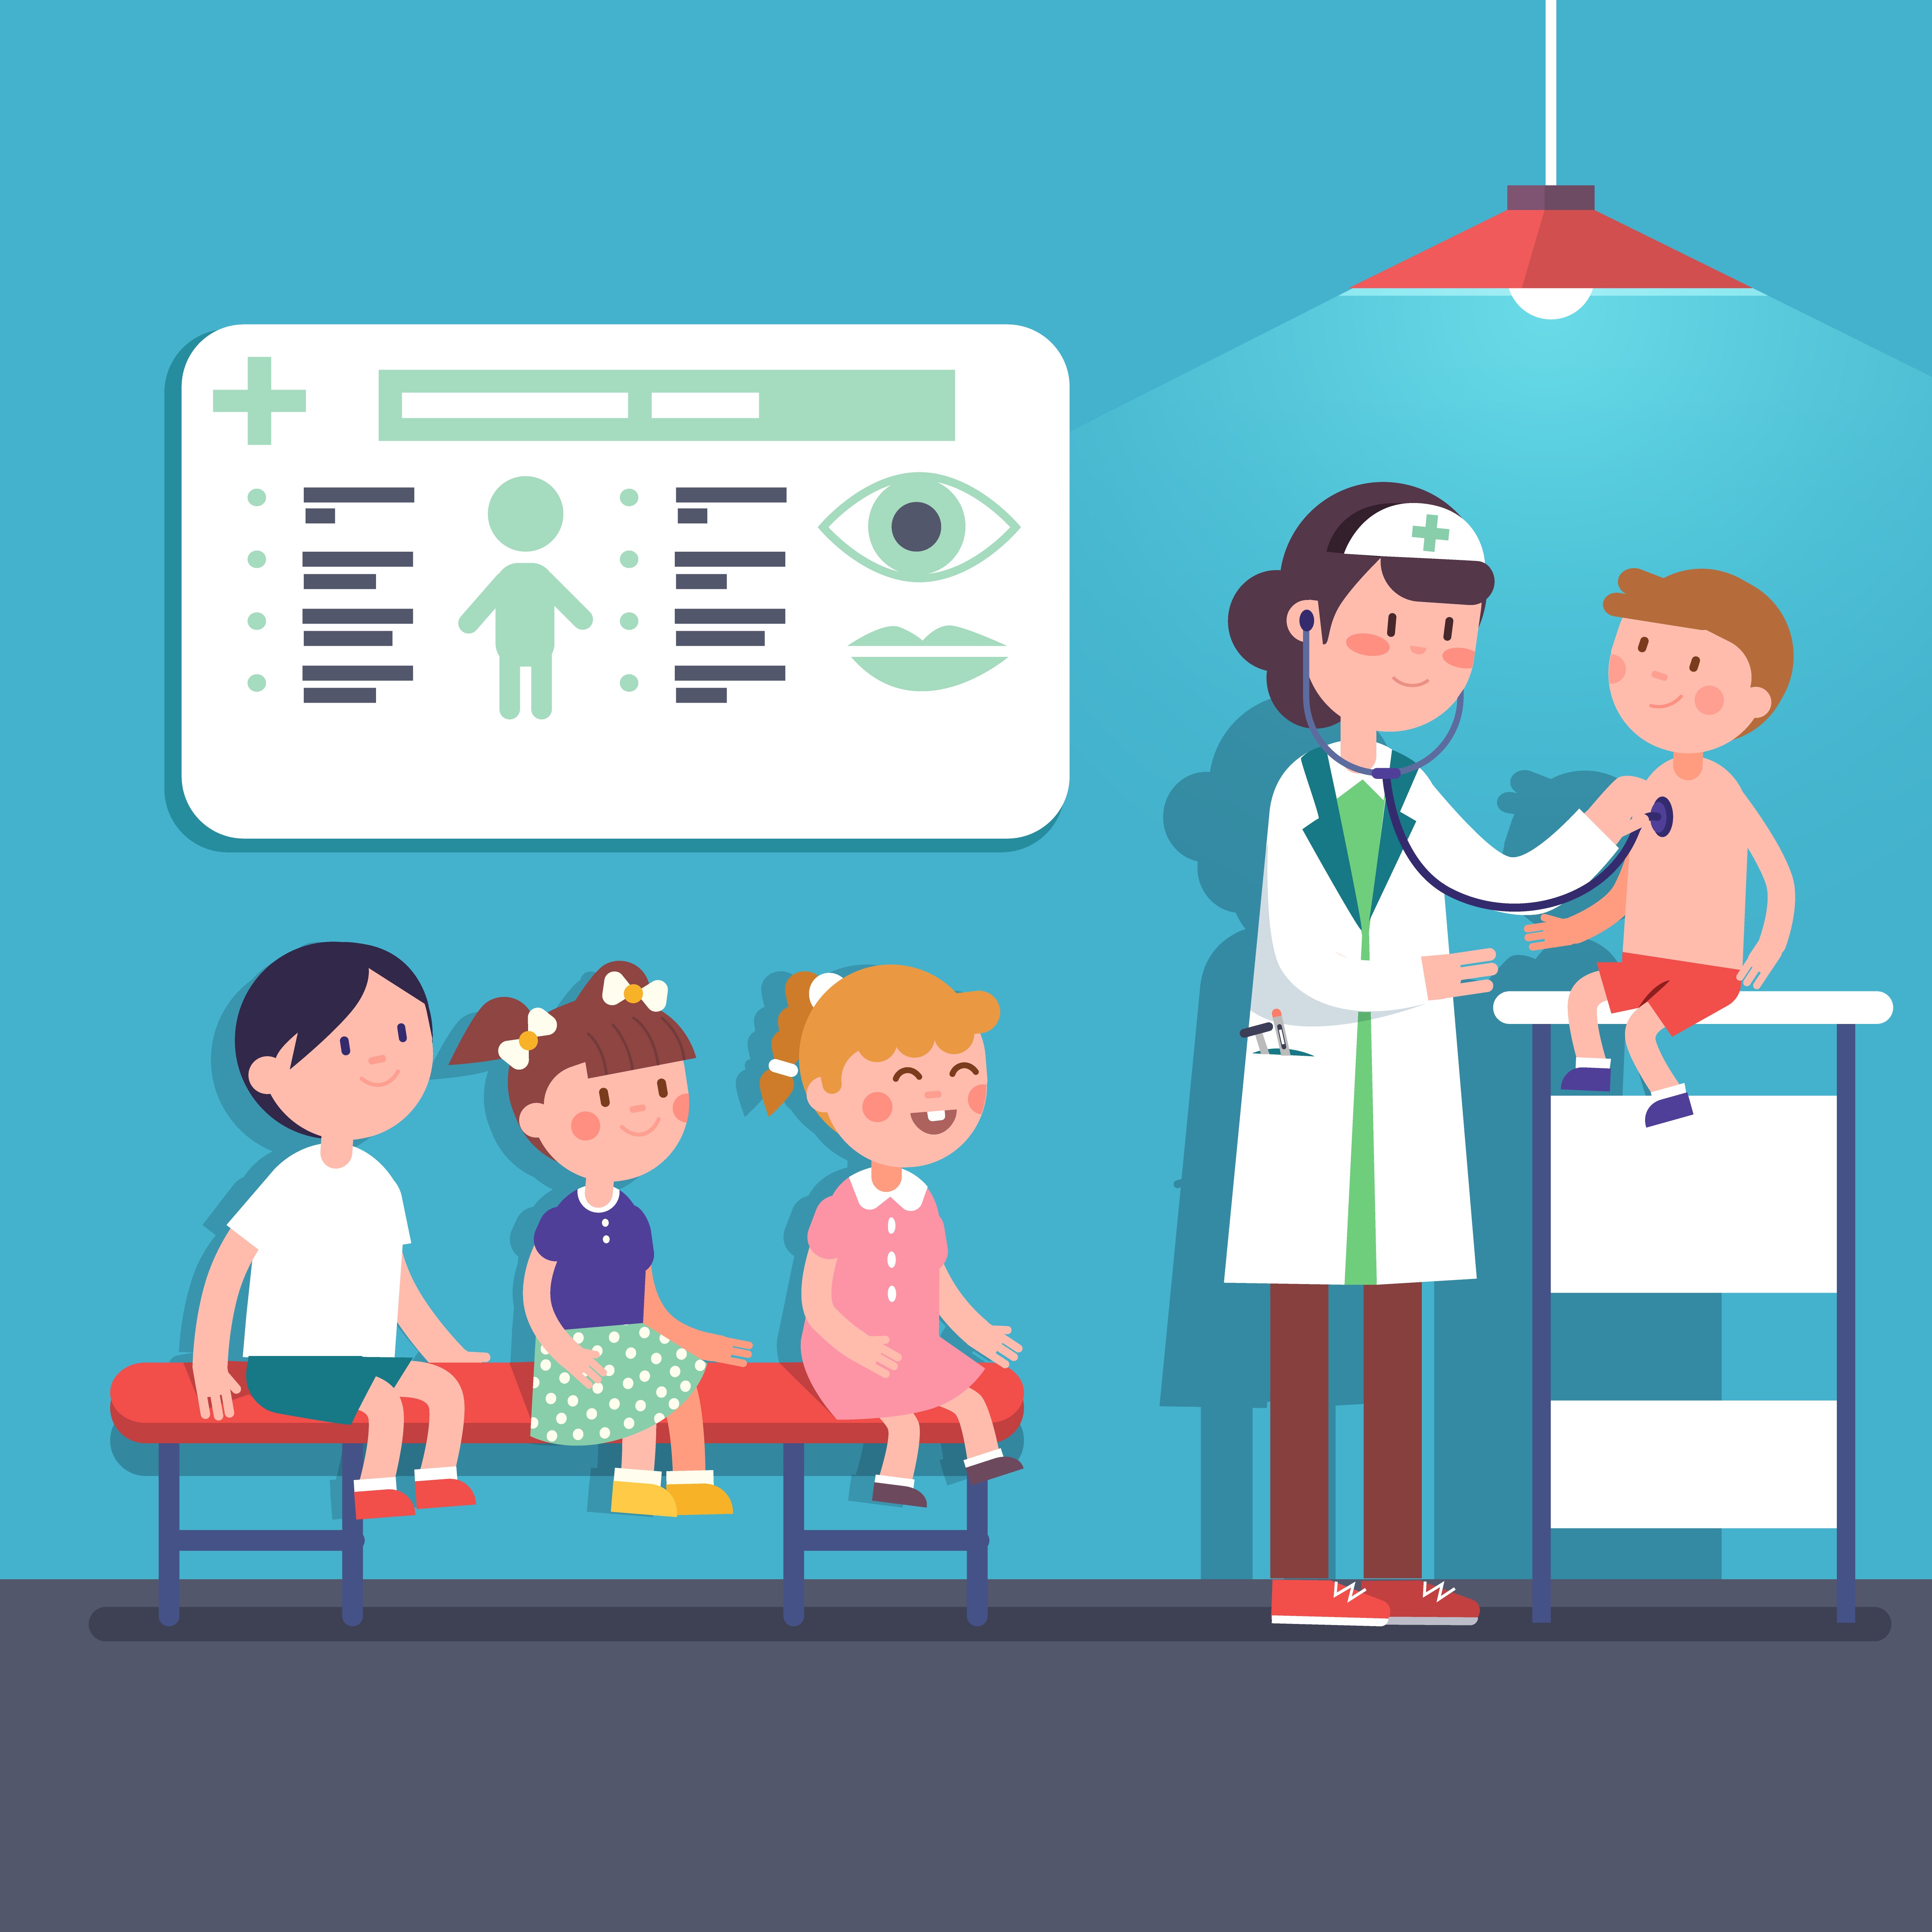 are pediatric visits preventive care